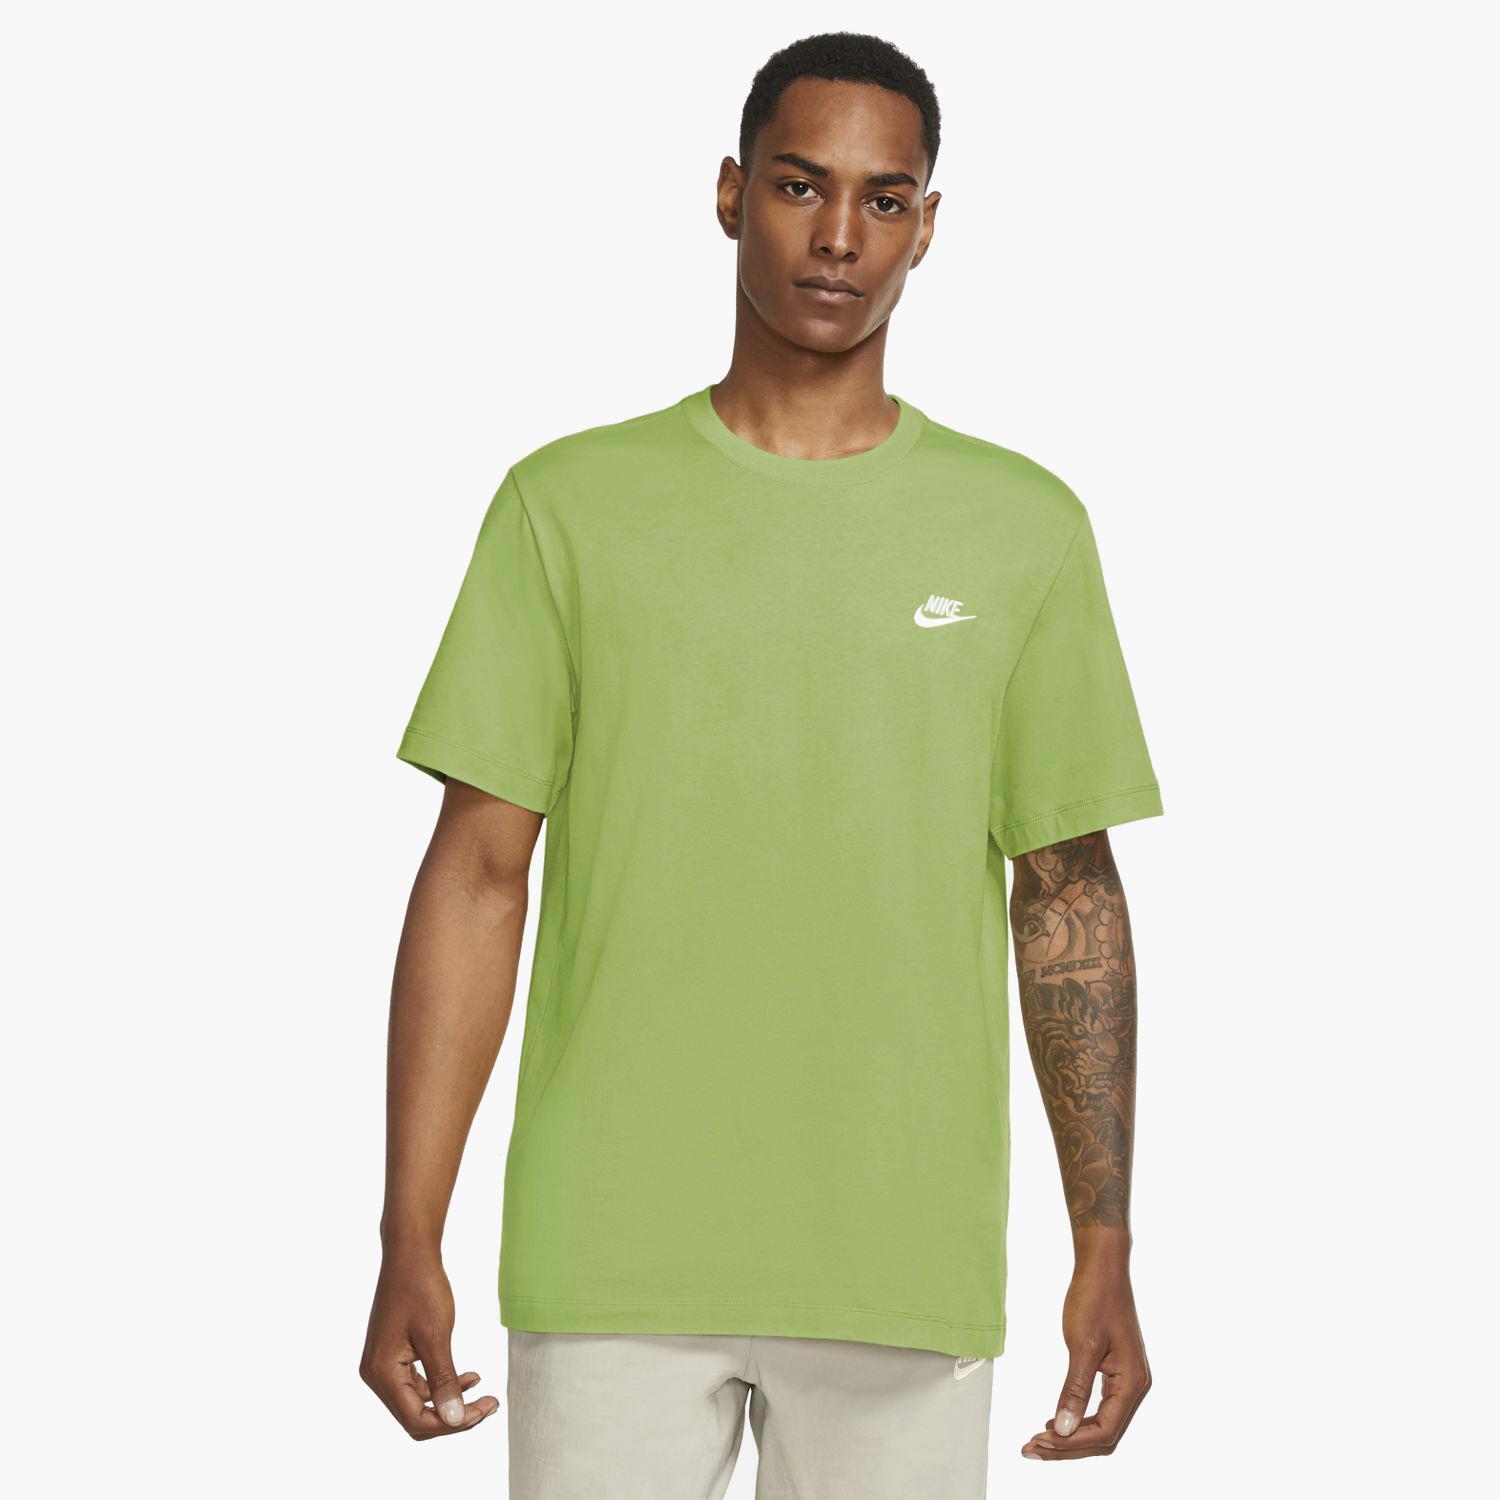 Nike - Verde - Camiseta Hombre Sprinter